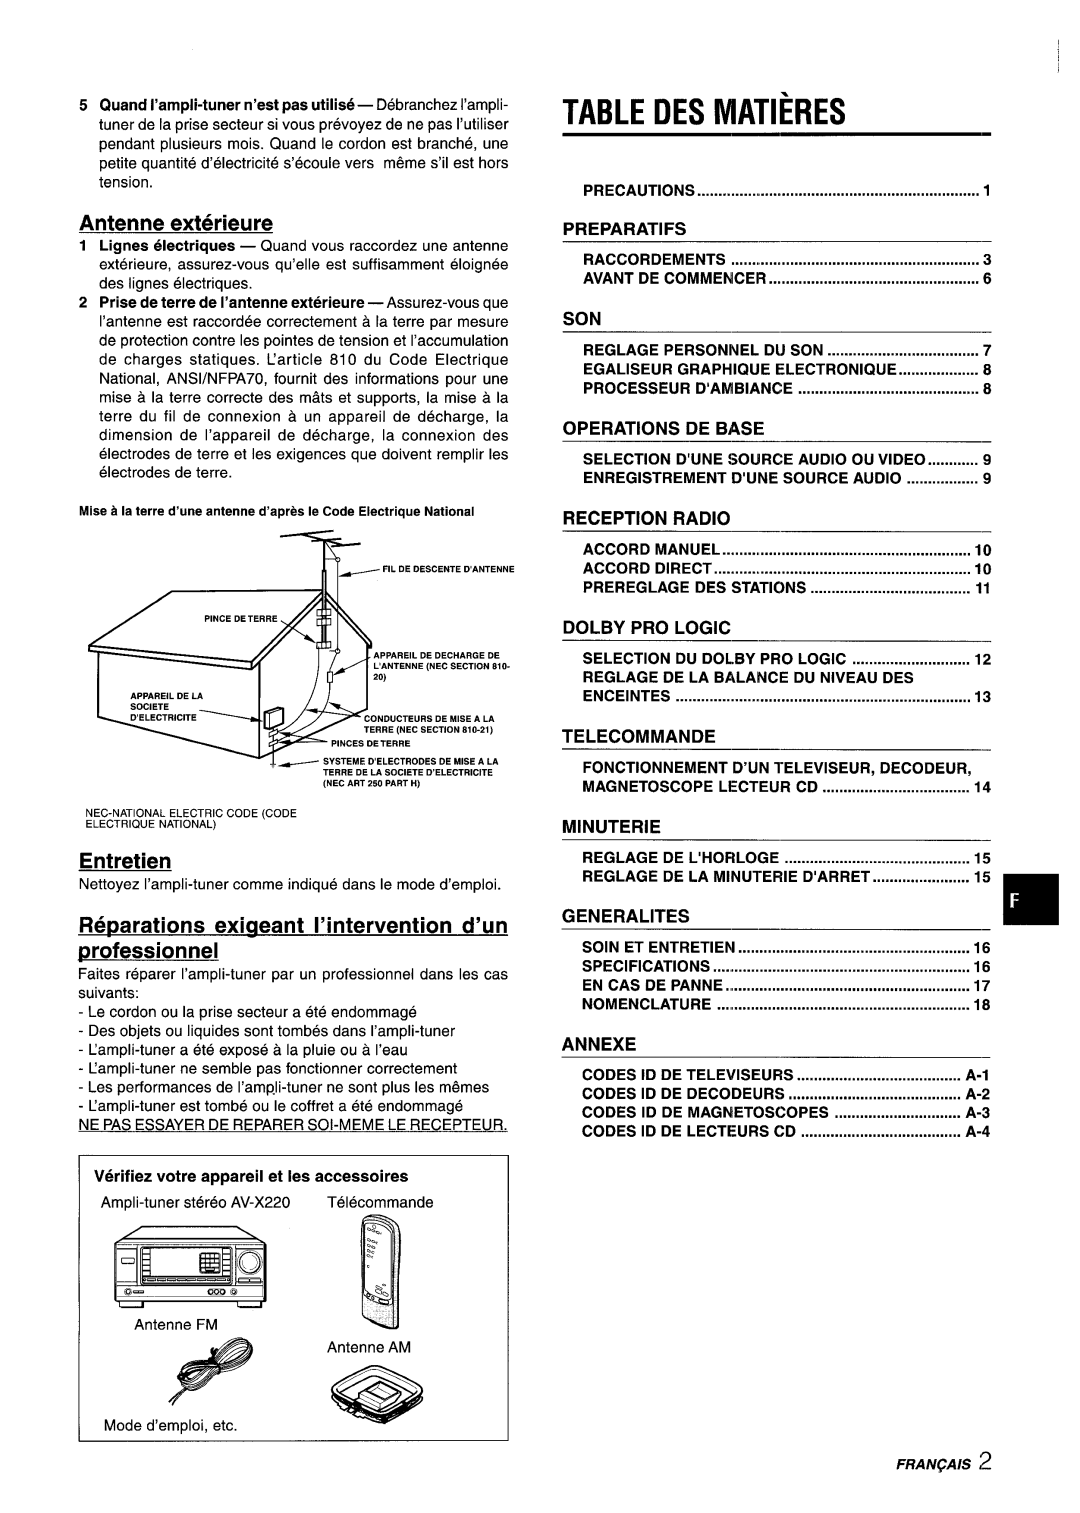 Aiwa AV-X220 Table Des Matieres, Antenne exterieure, Entretien, Reparations exicaeant I’intervention d’un professionnel 